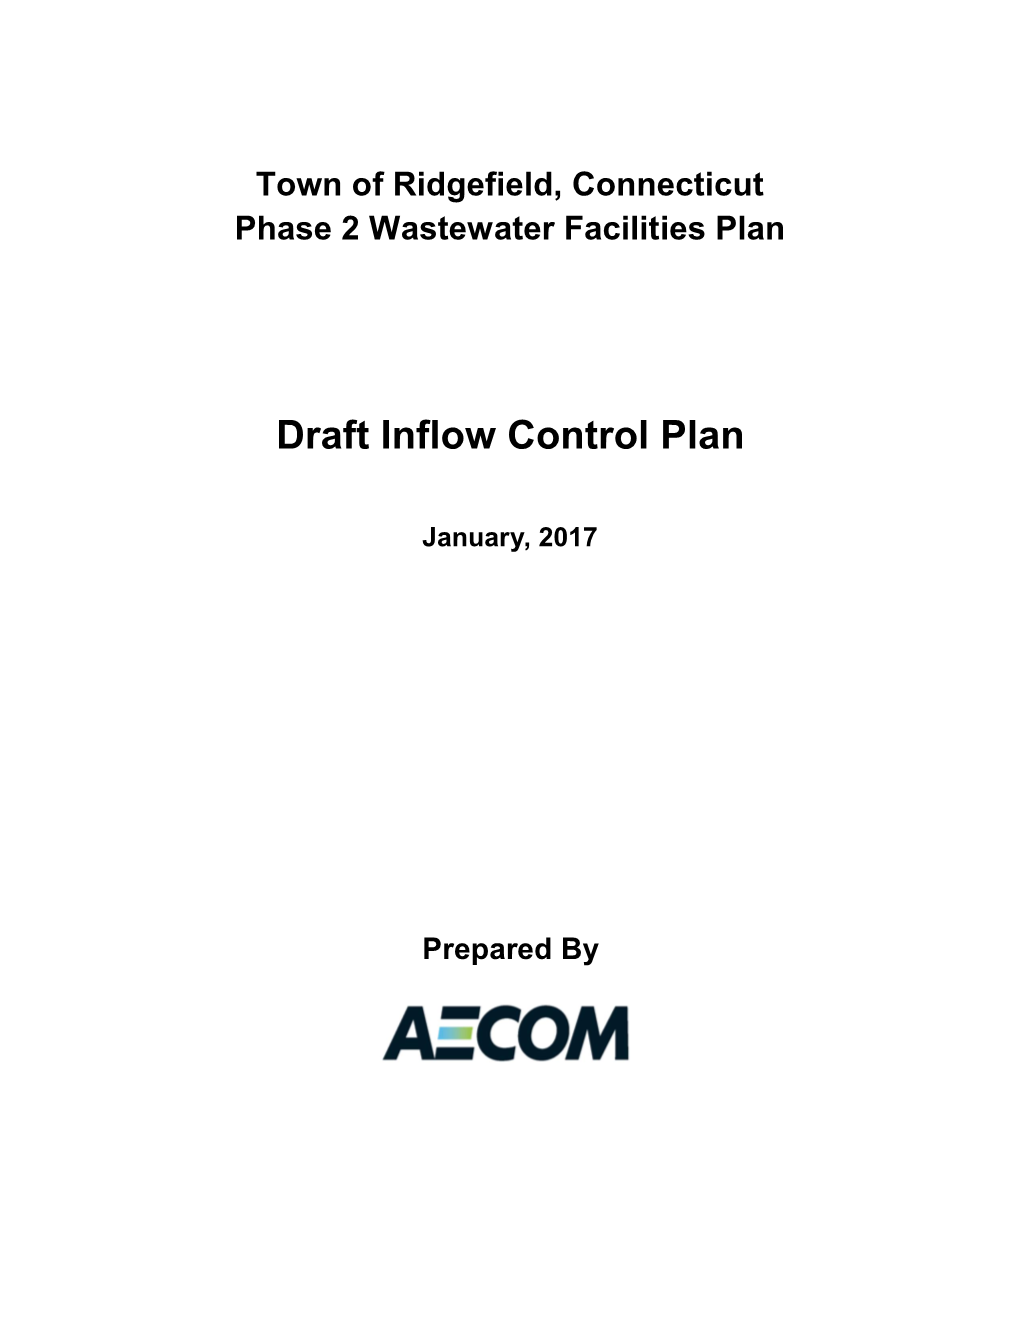 Draft Inflow Control Plan